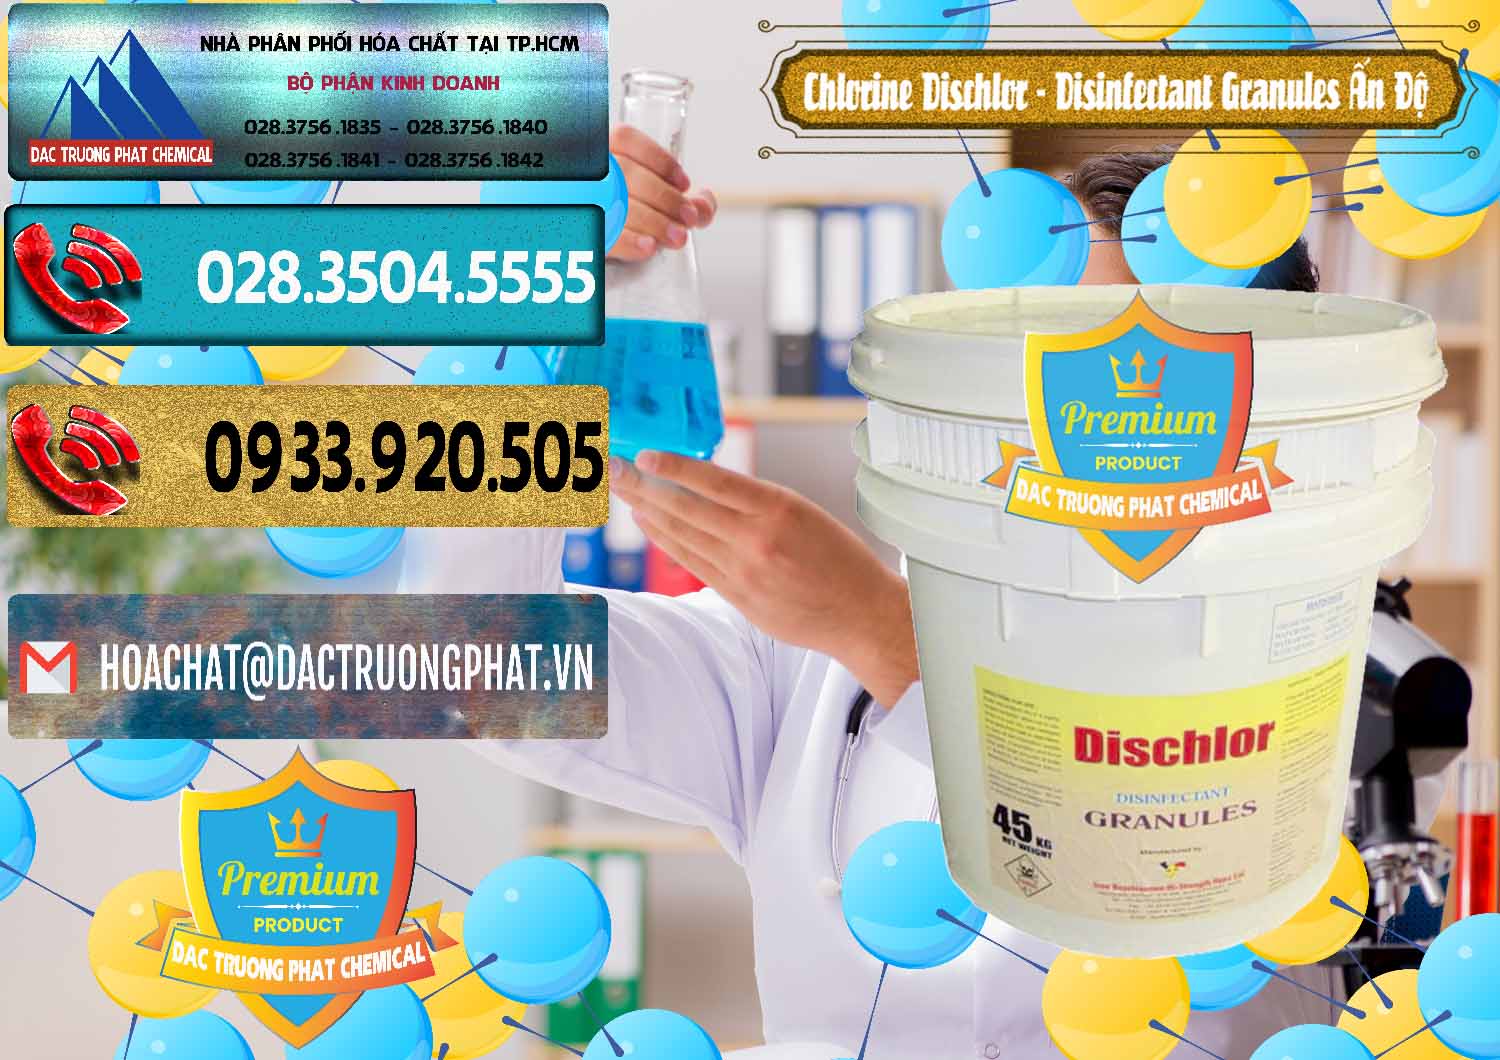 Công ty chuyên bán _ cung cấp Chlorine – Clorin 70% Dischlor - Disinfectant Granules Ấn Độ India - 0248 - Đơn vị cung cấp & phân phối hóa chất tại TP.HCM - hoachatdetnhuom.com